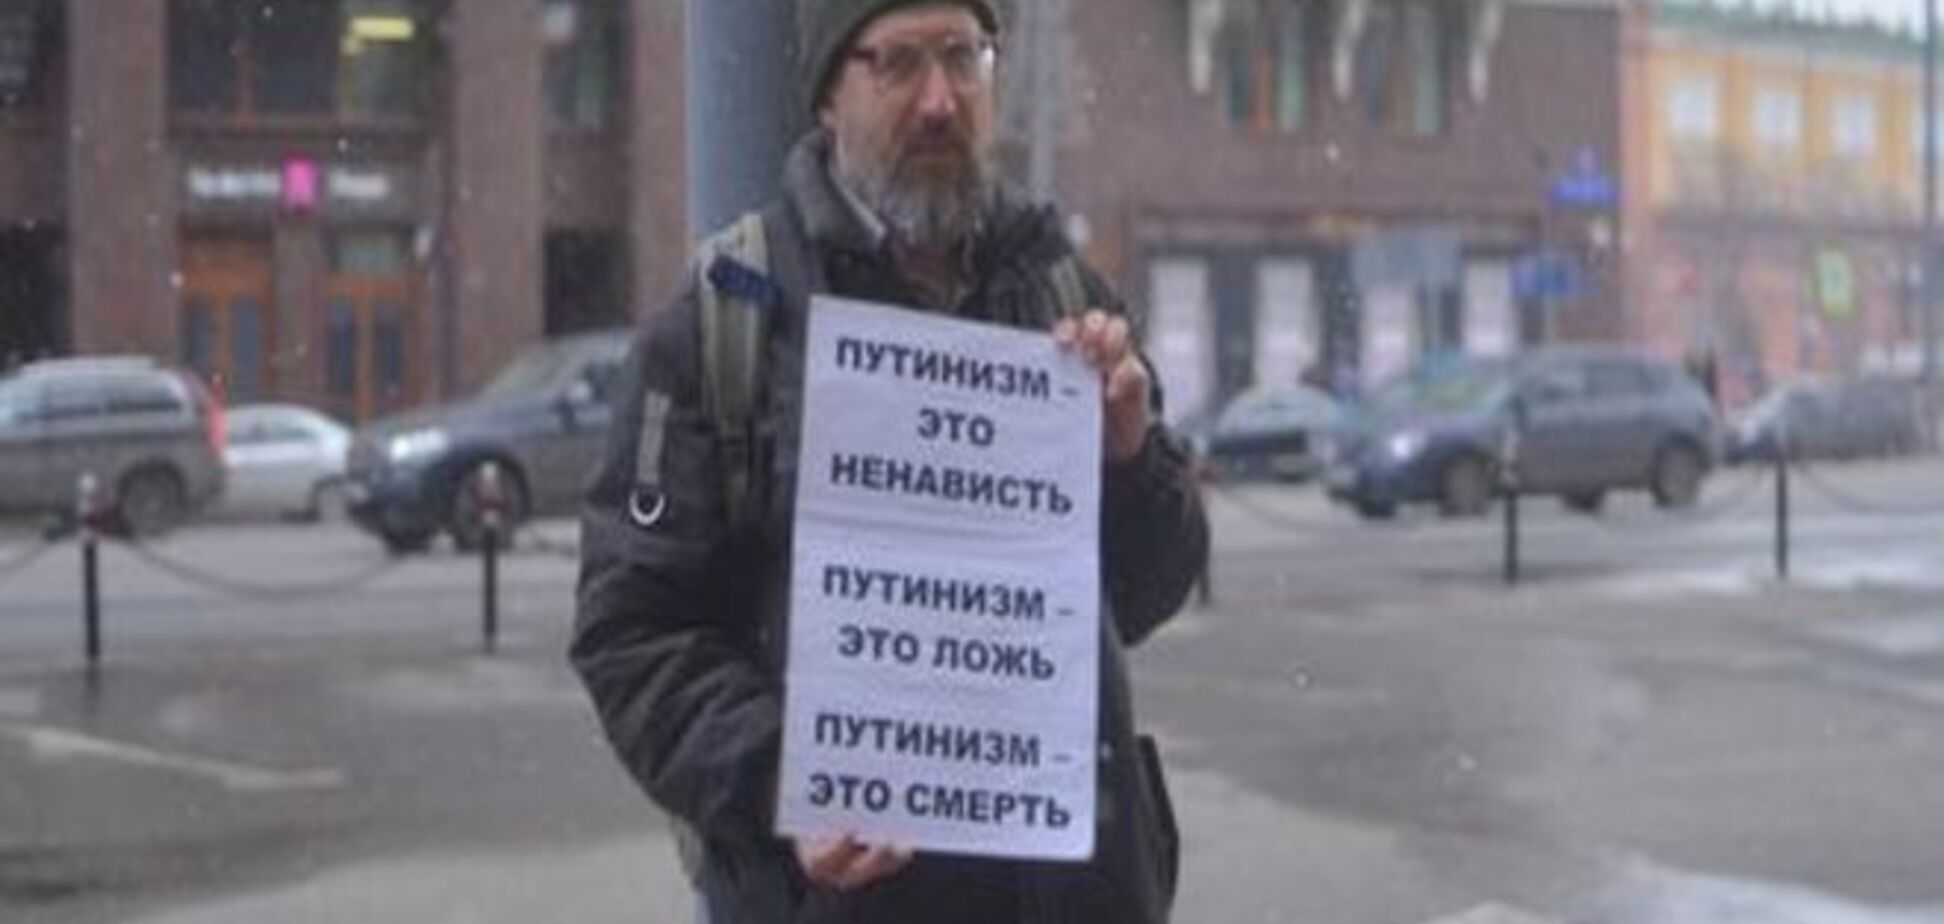 'Больше одного не собираться': протестная акция в центре Москвы